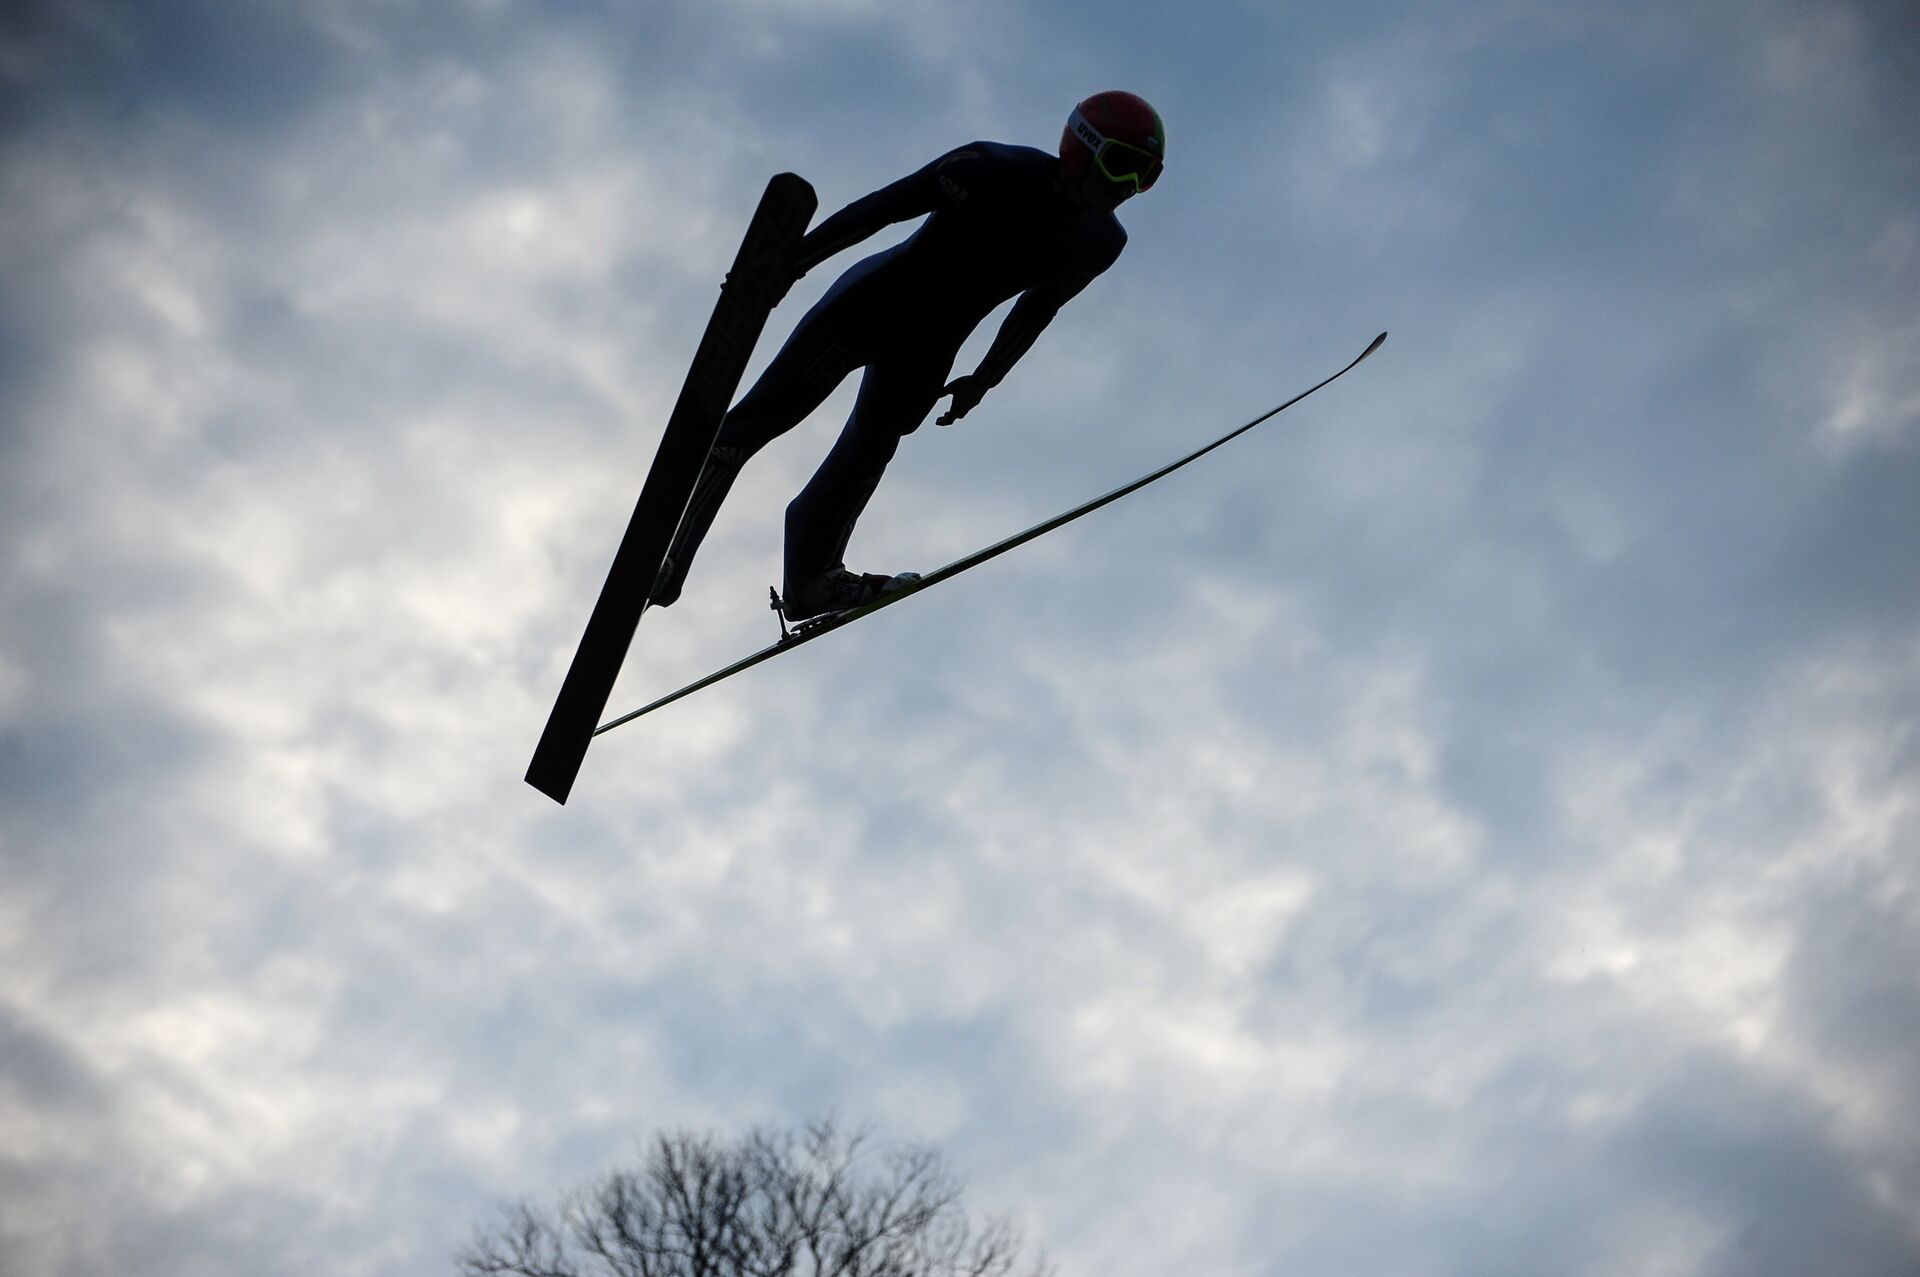 Ski diving. Спорт прыжки с трамплина на лыжах. Трамплин для прыжков на лыжах Чайковский. Летающий лыжник.